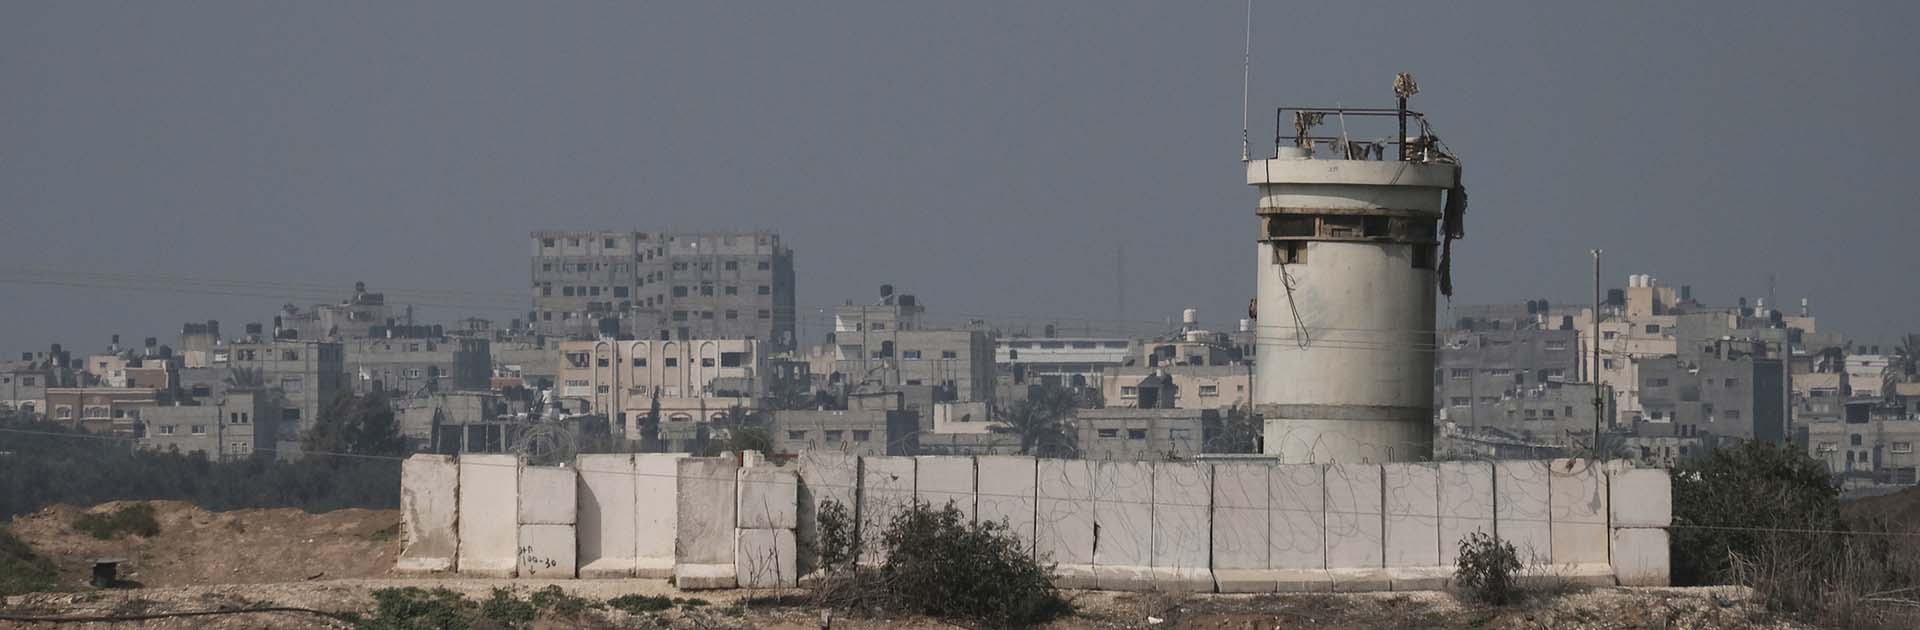 Frontera entre Gaza e Israel. Vista lejana de casas residenciales en el norte de la franja de Gaza desde un puesto del ejército israelí